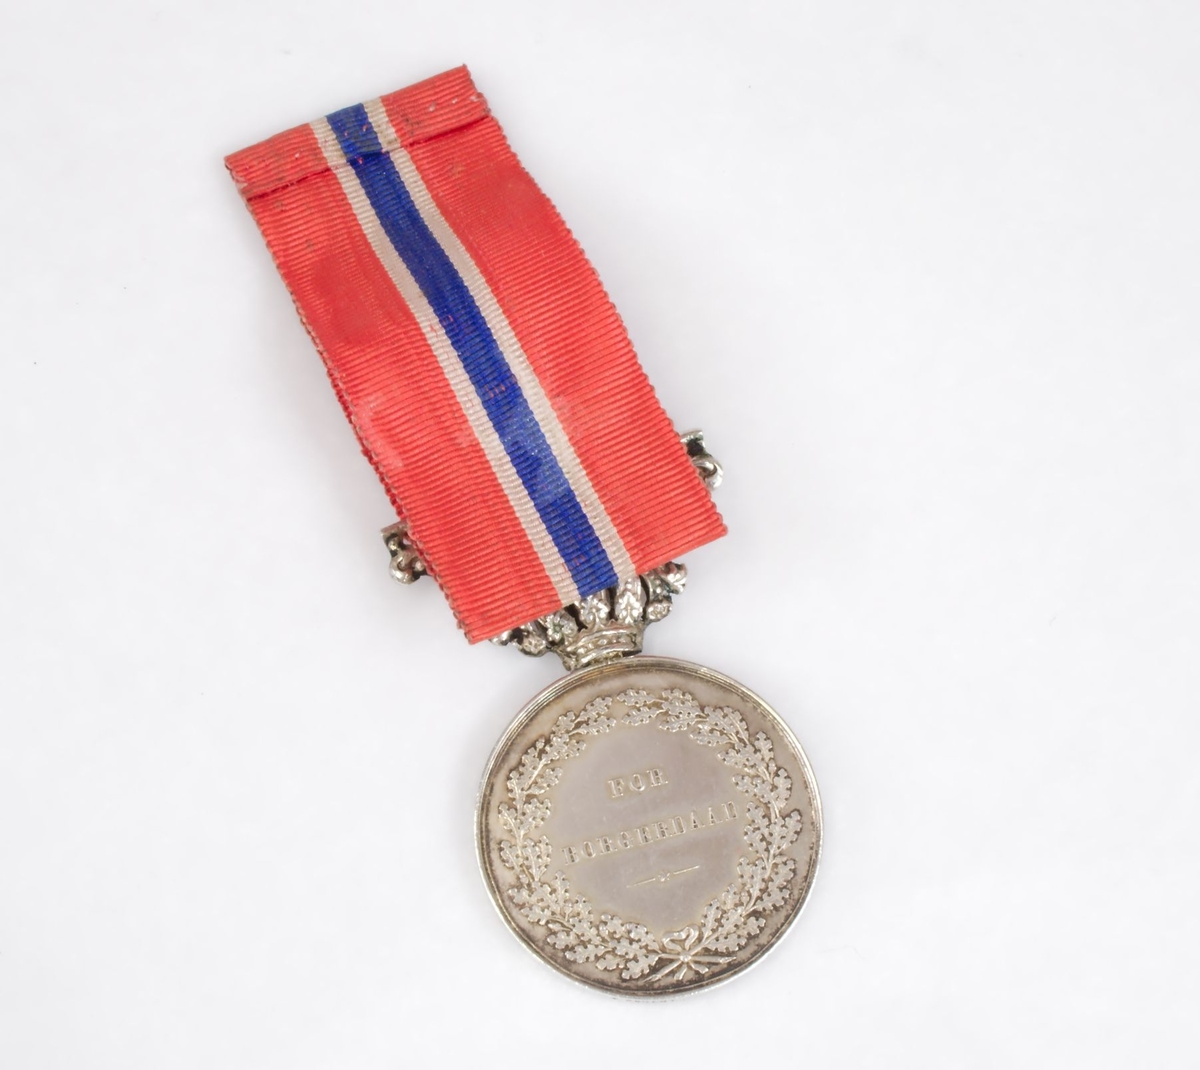 Sølvmedalje med bånd i de norske nasjonalfargene. Den ene siden bærer kong Carl Johans portrett, og den andre siden har ordene "For borgerdåd" omkranset av eikekrans. Hempen har kronedekor. Medaljen oppbevares i originalt etui.